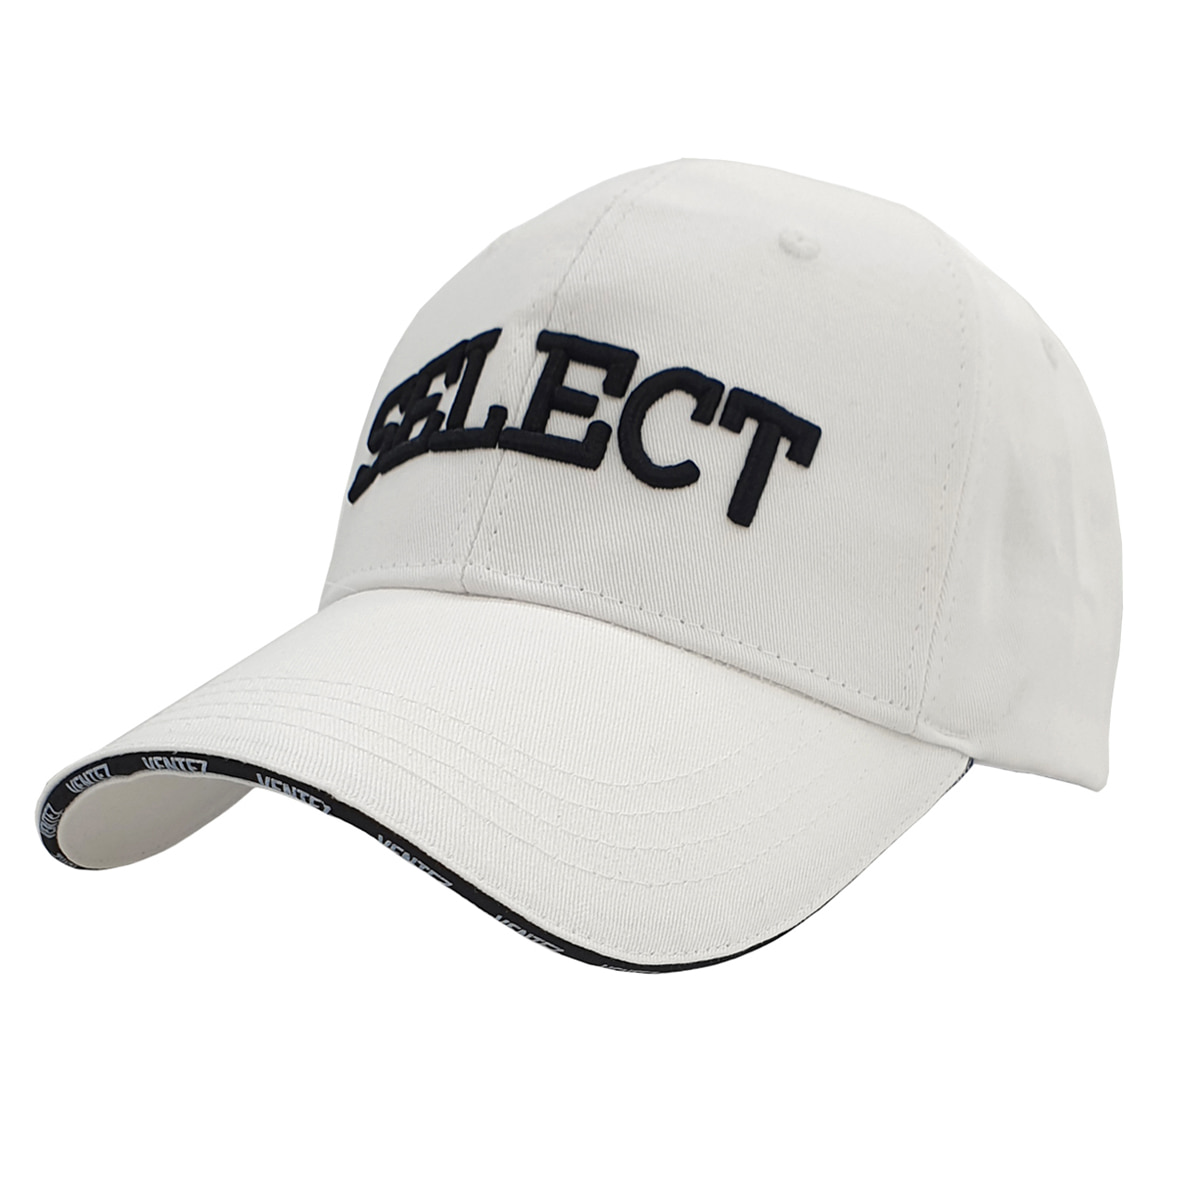 SELECT CAP VER.2 - 벤테즈